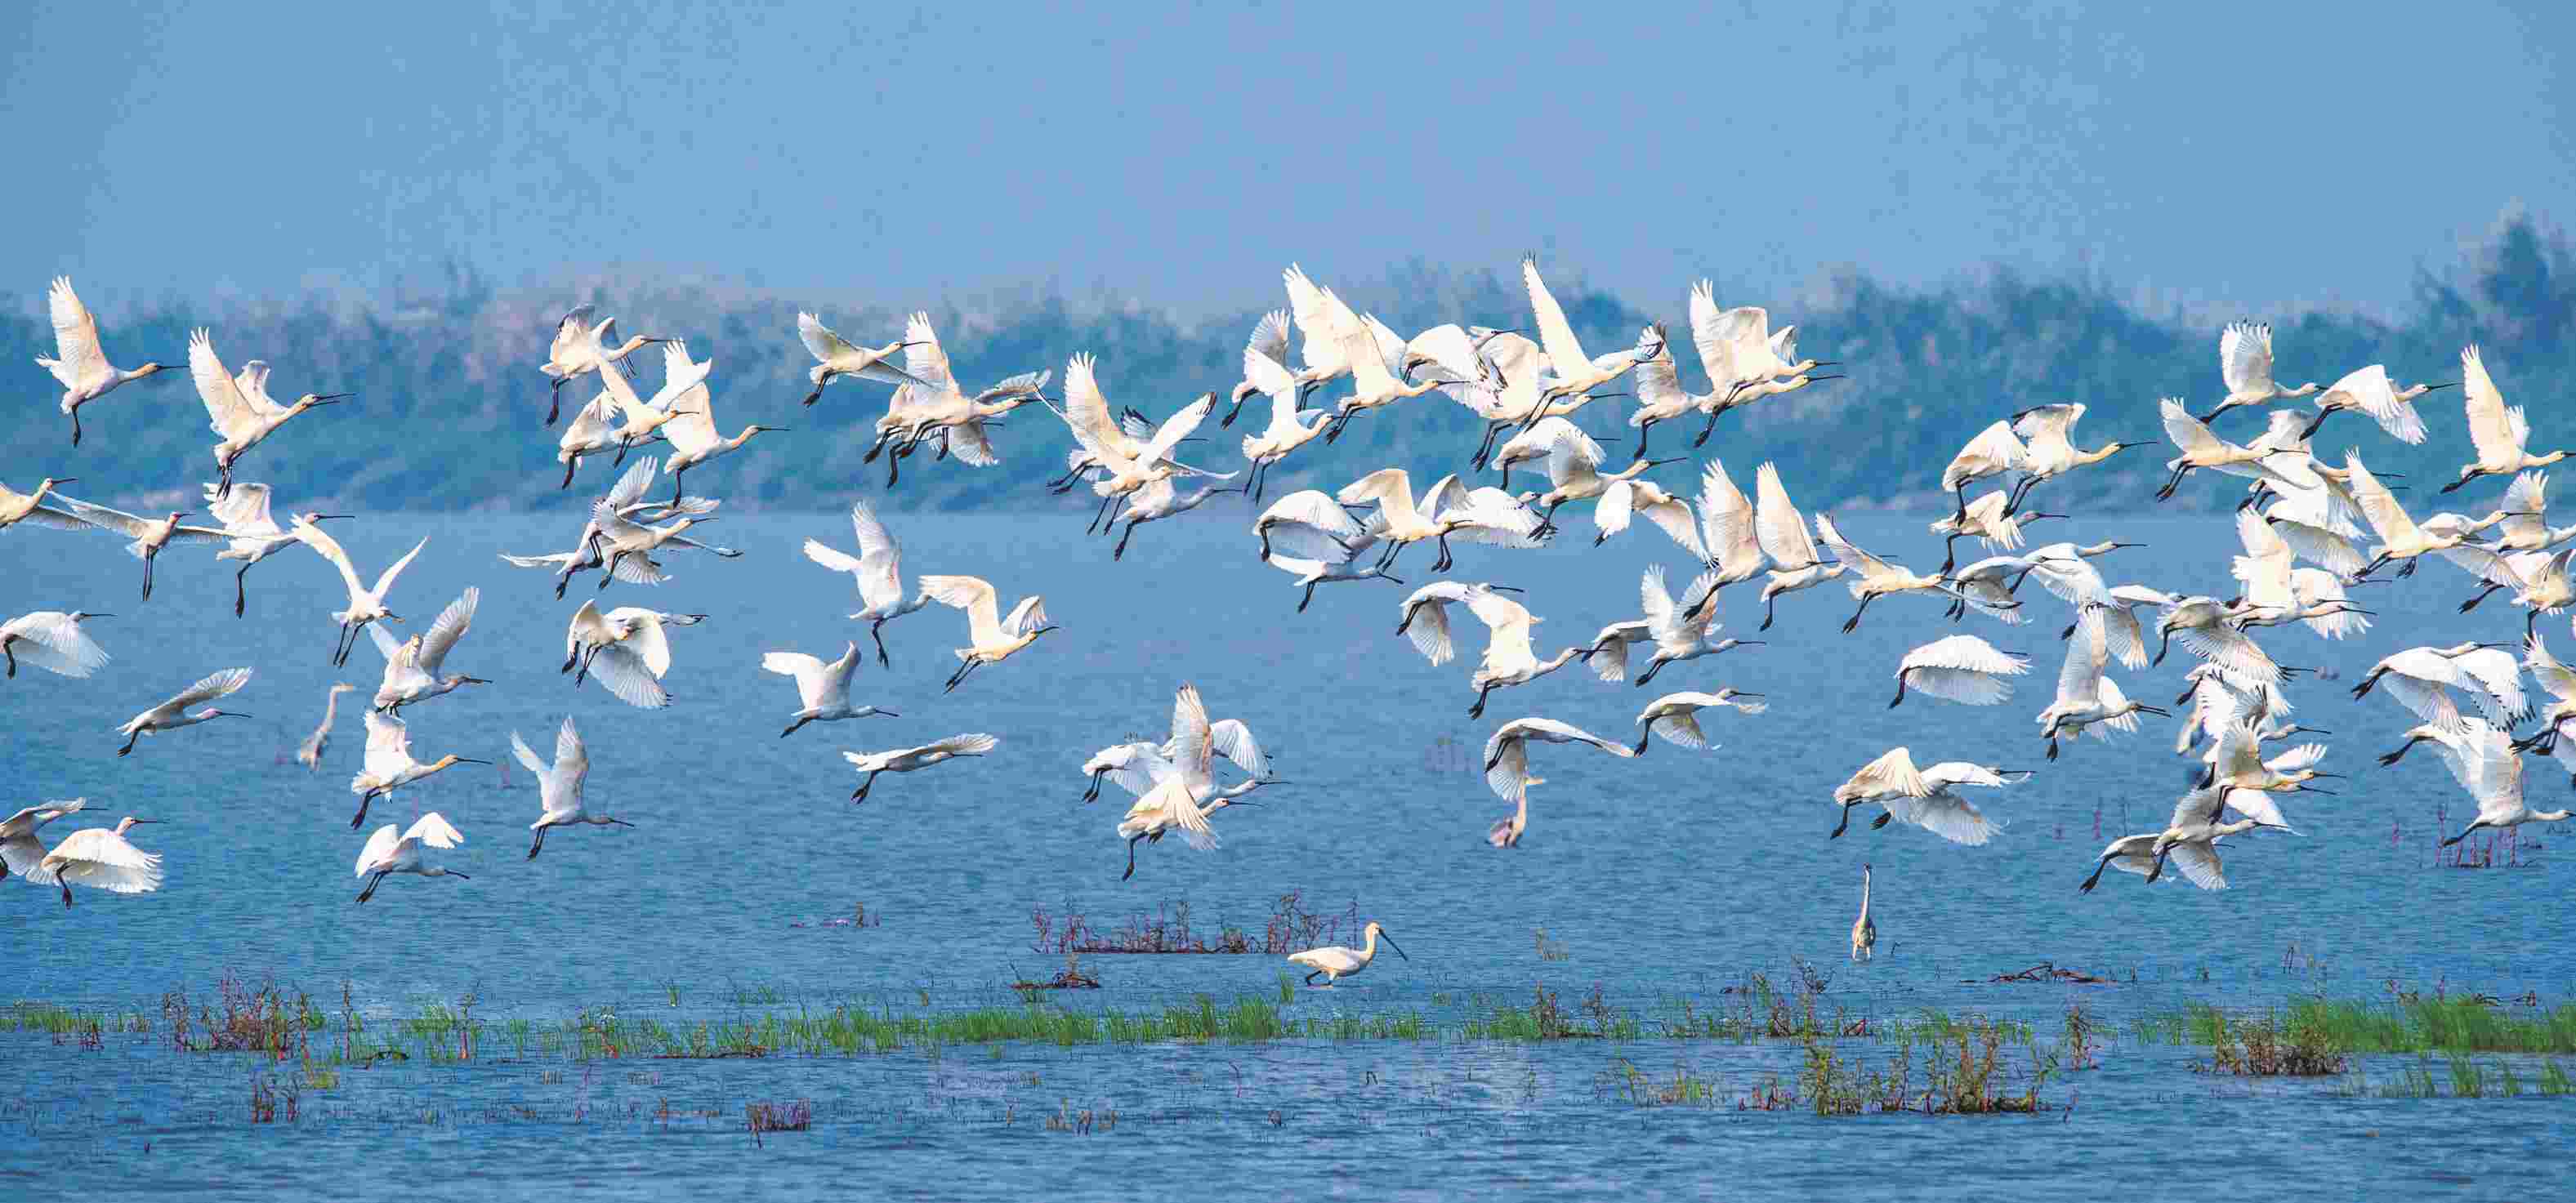 横岭湖湿地保护区百鸟翔集。湘阴县摄影家协会供图